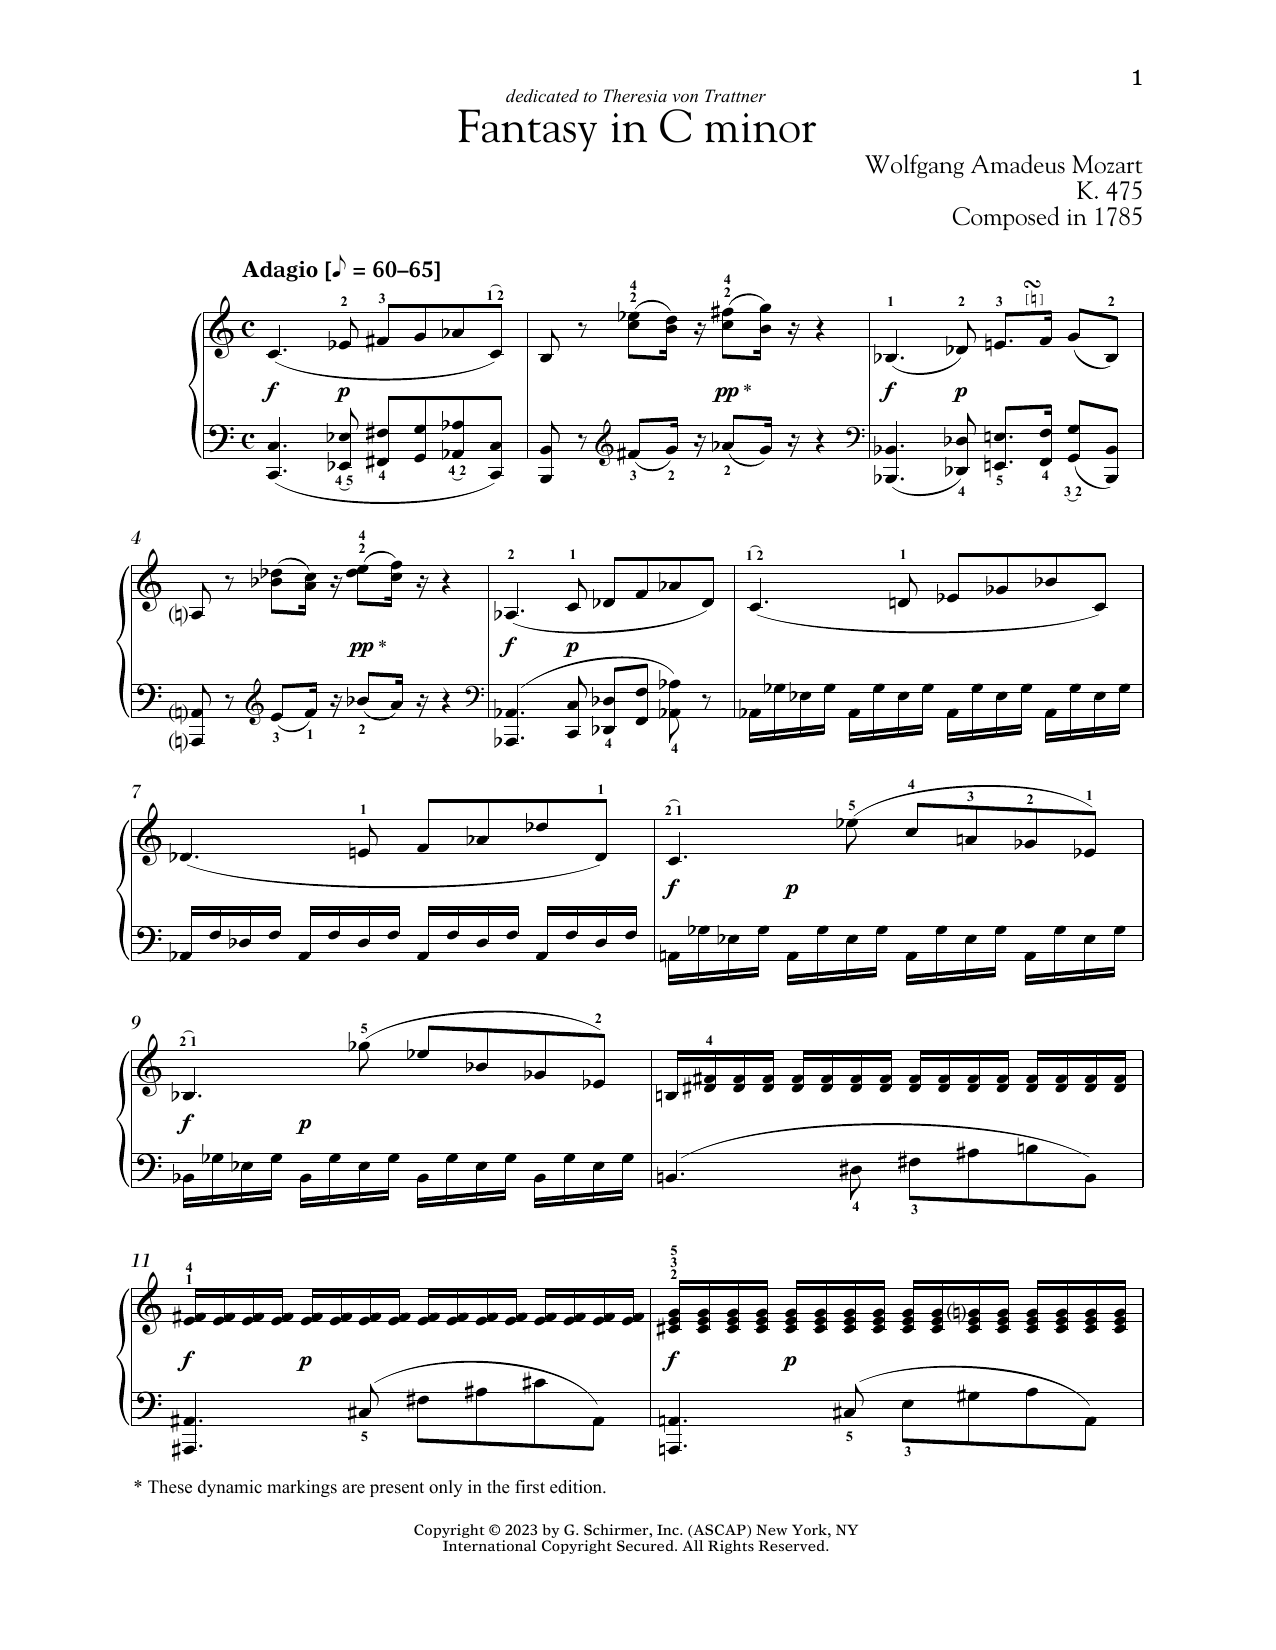 Wolfgang Amadeus Mozart Fantasie In C Minor, K. 475 sheet music notes printable PDF score